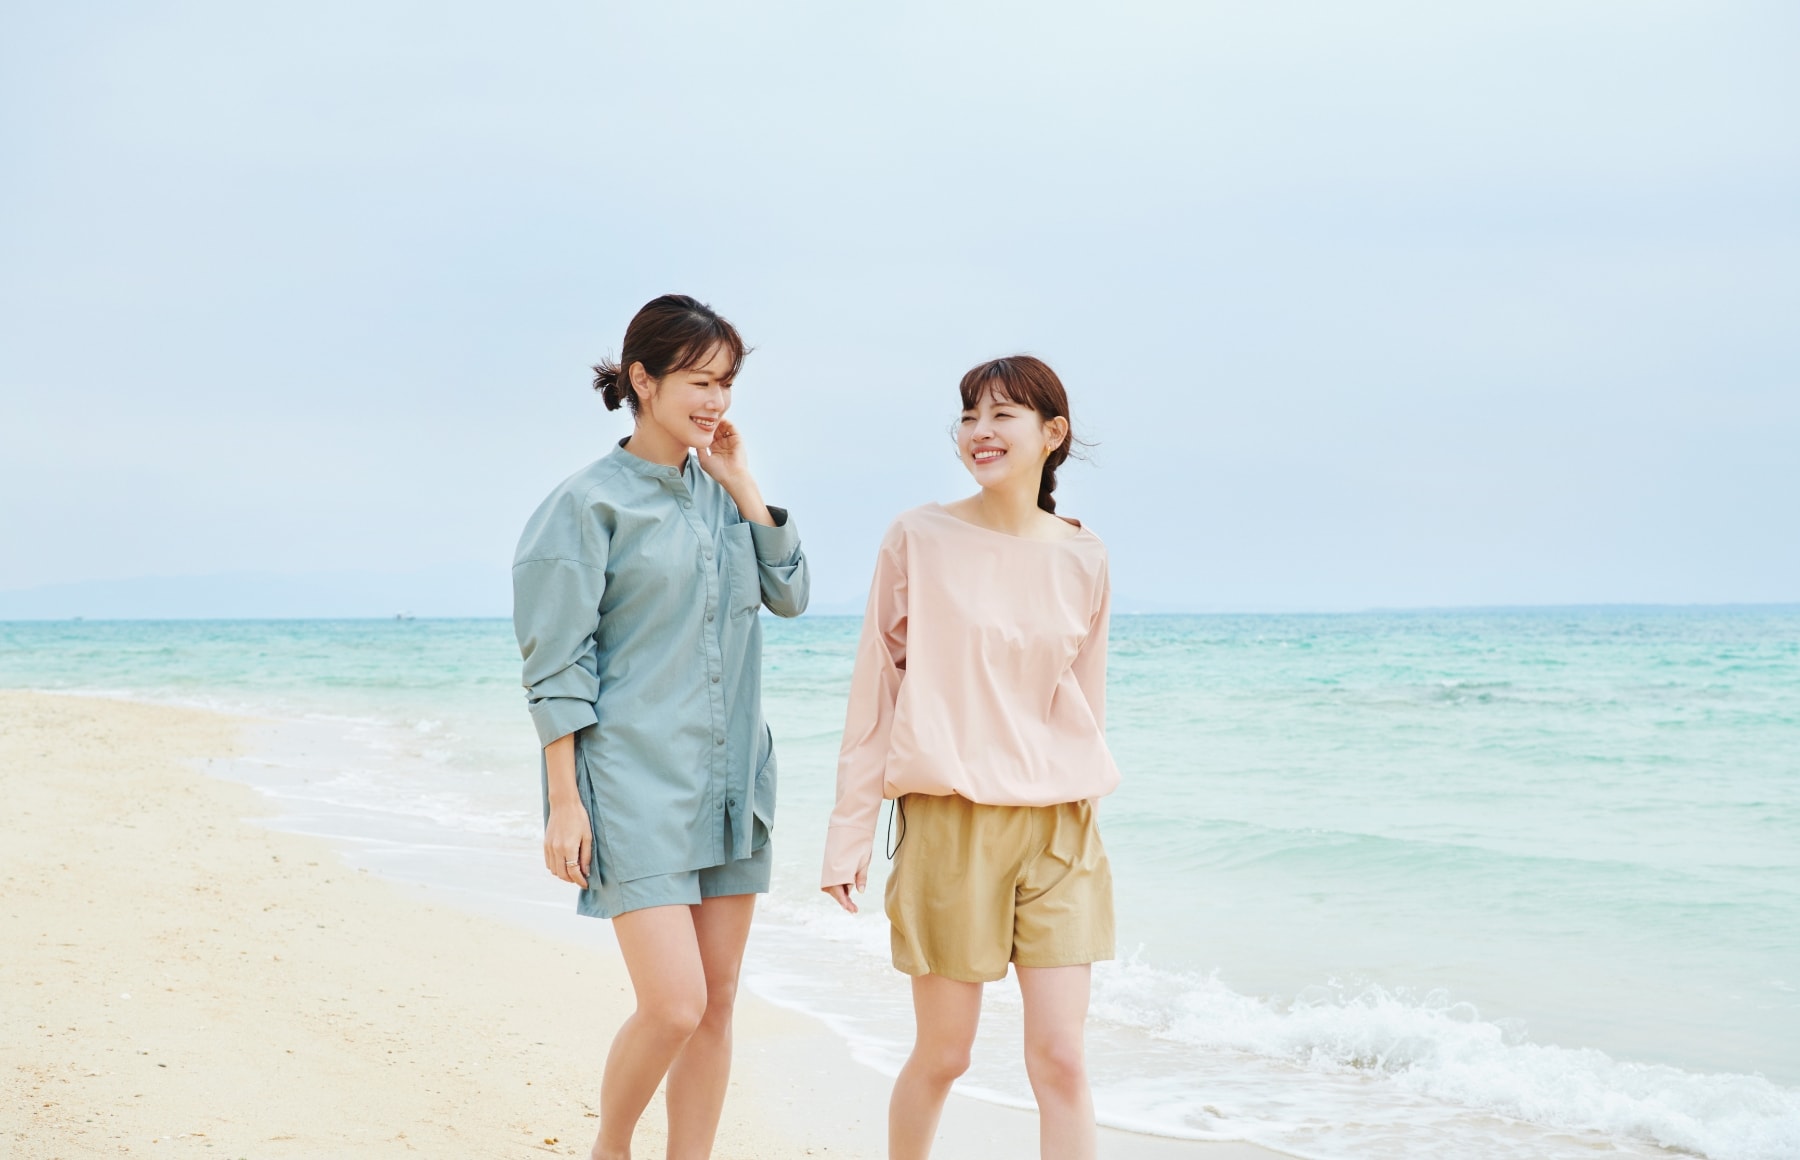 ドロストヘムラッシュガードとラッシュガードショートパンツとラッシュガードシャツを着用した女性二人が談笑しながら砂浜を歩いている写真２